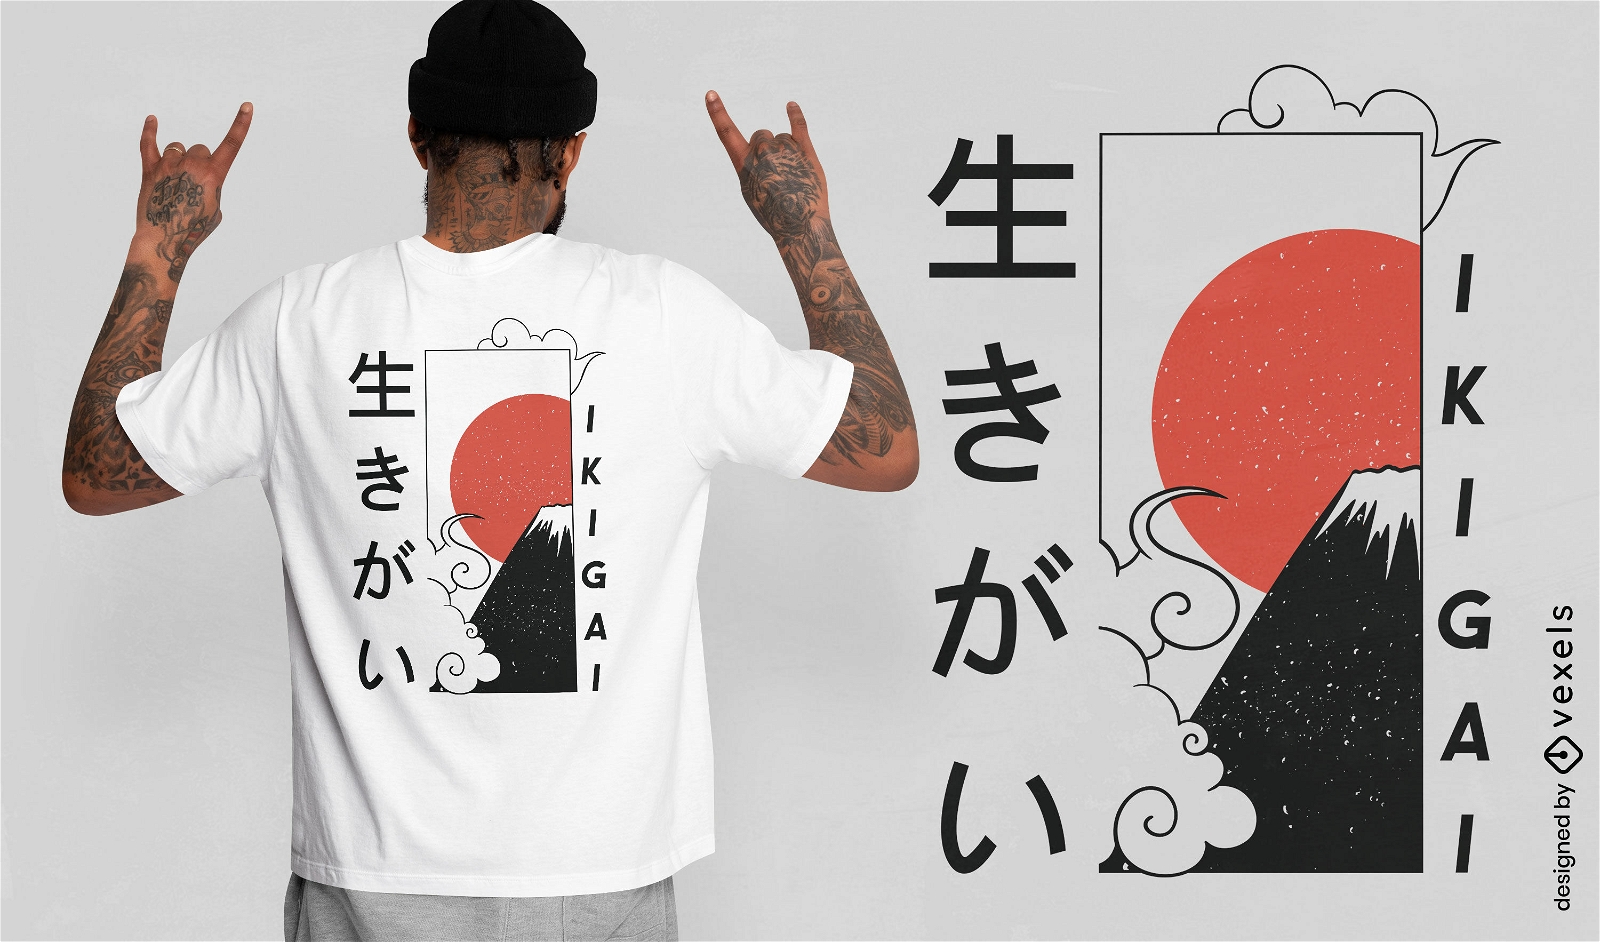 Ikigai japanisches Zitat-T-Shirt Design